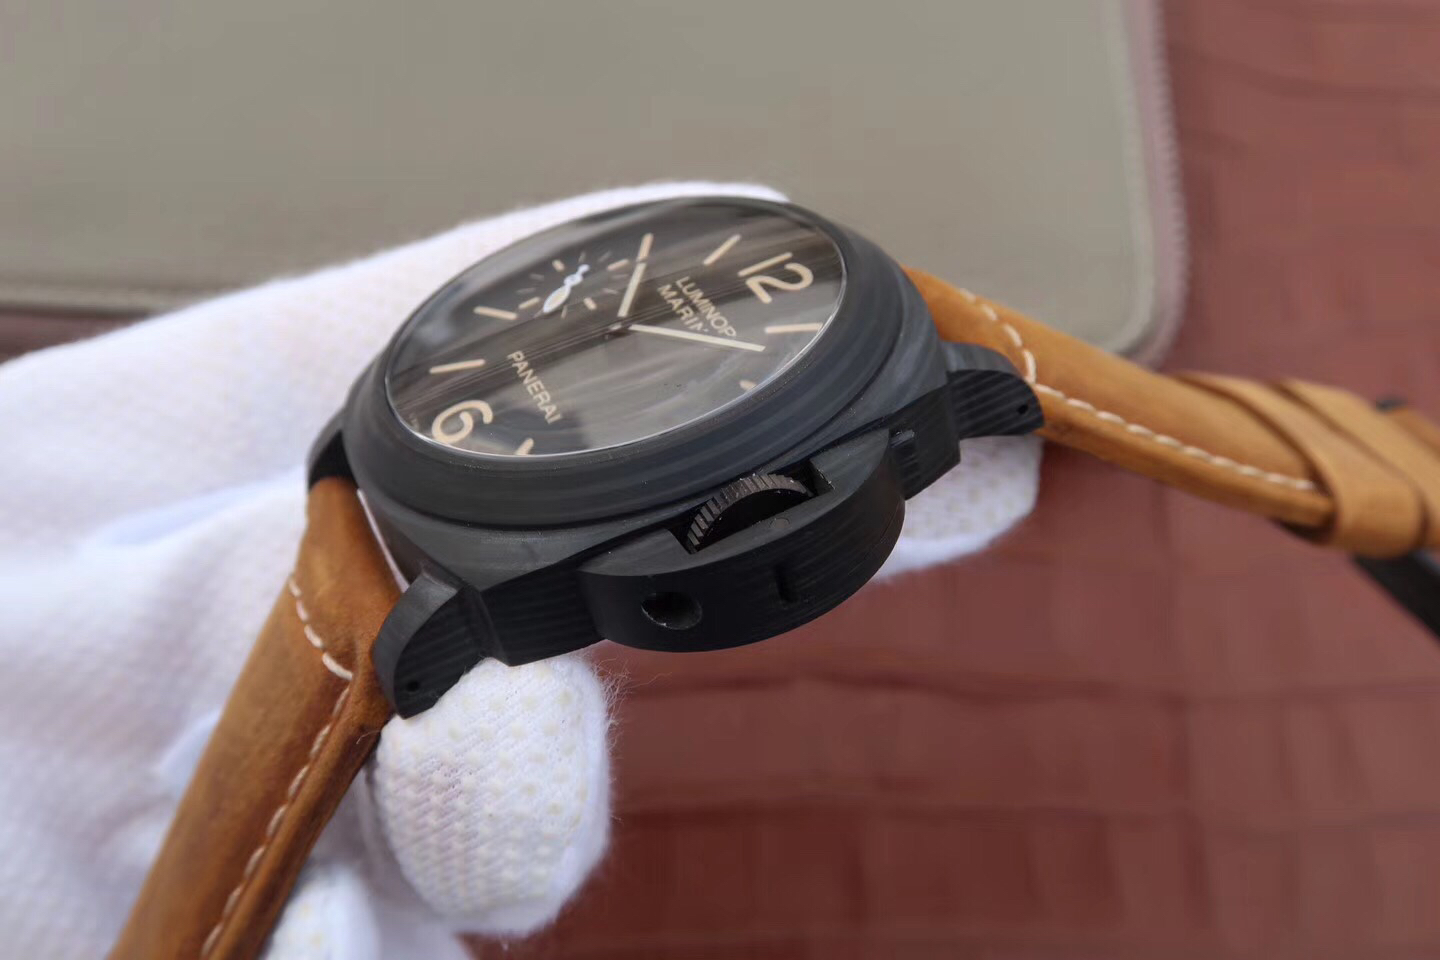 202304160220033 - 復刻手錶沛納海到哪裏買 XF沛納海PAM417碳纖限量版￥2980